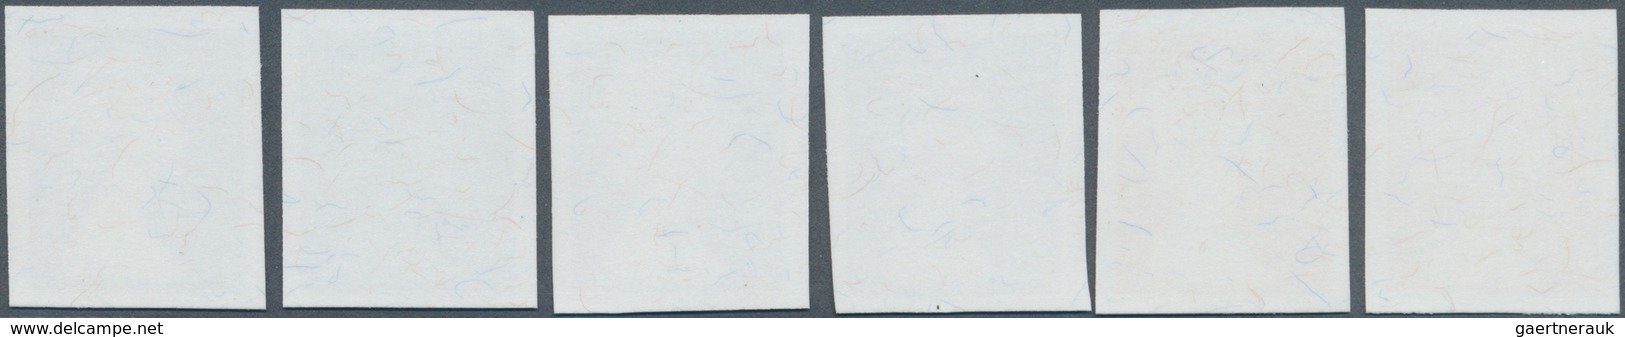 14225 Großbritannien - Machin: 1997, Imperforate Proof In Issued Design Without Value On Gummed Paper, Six - Machin-Ausgaben